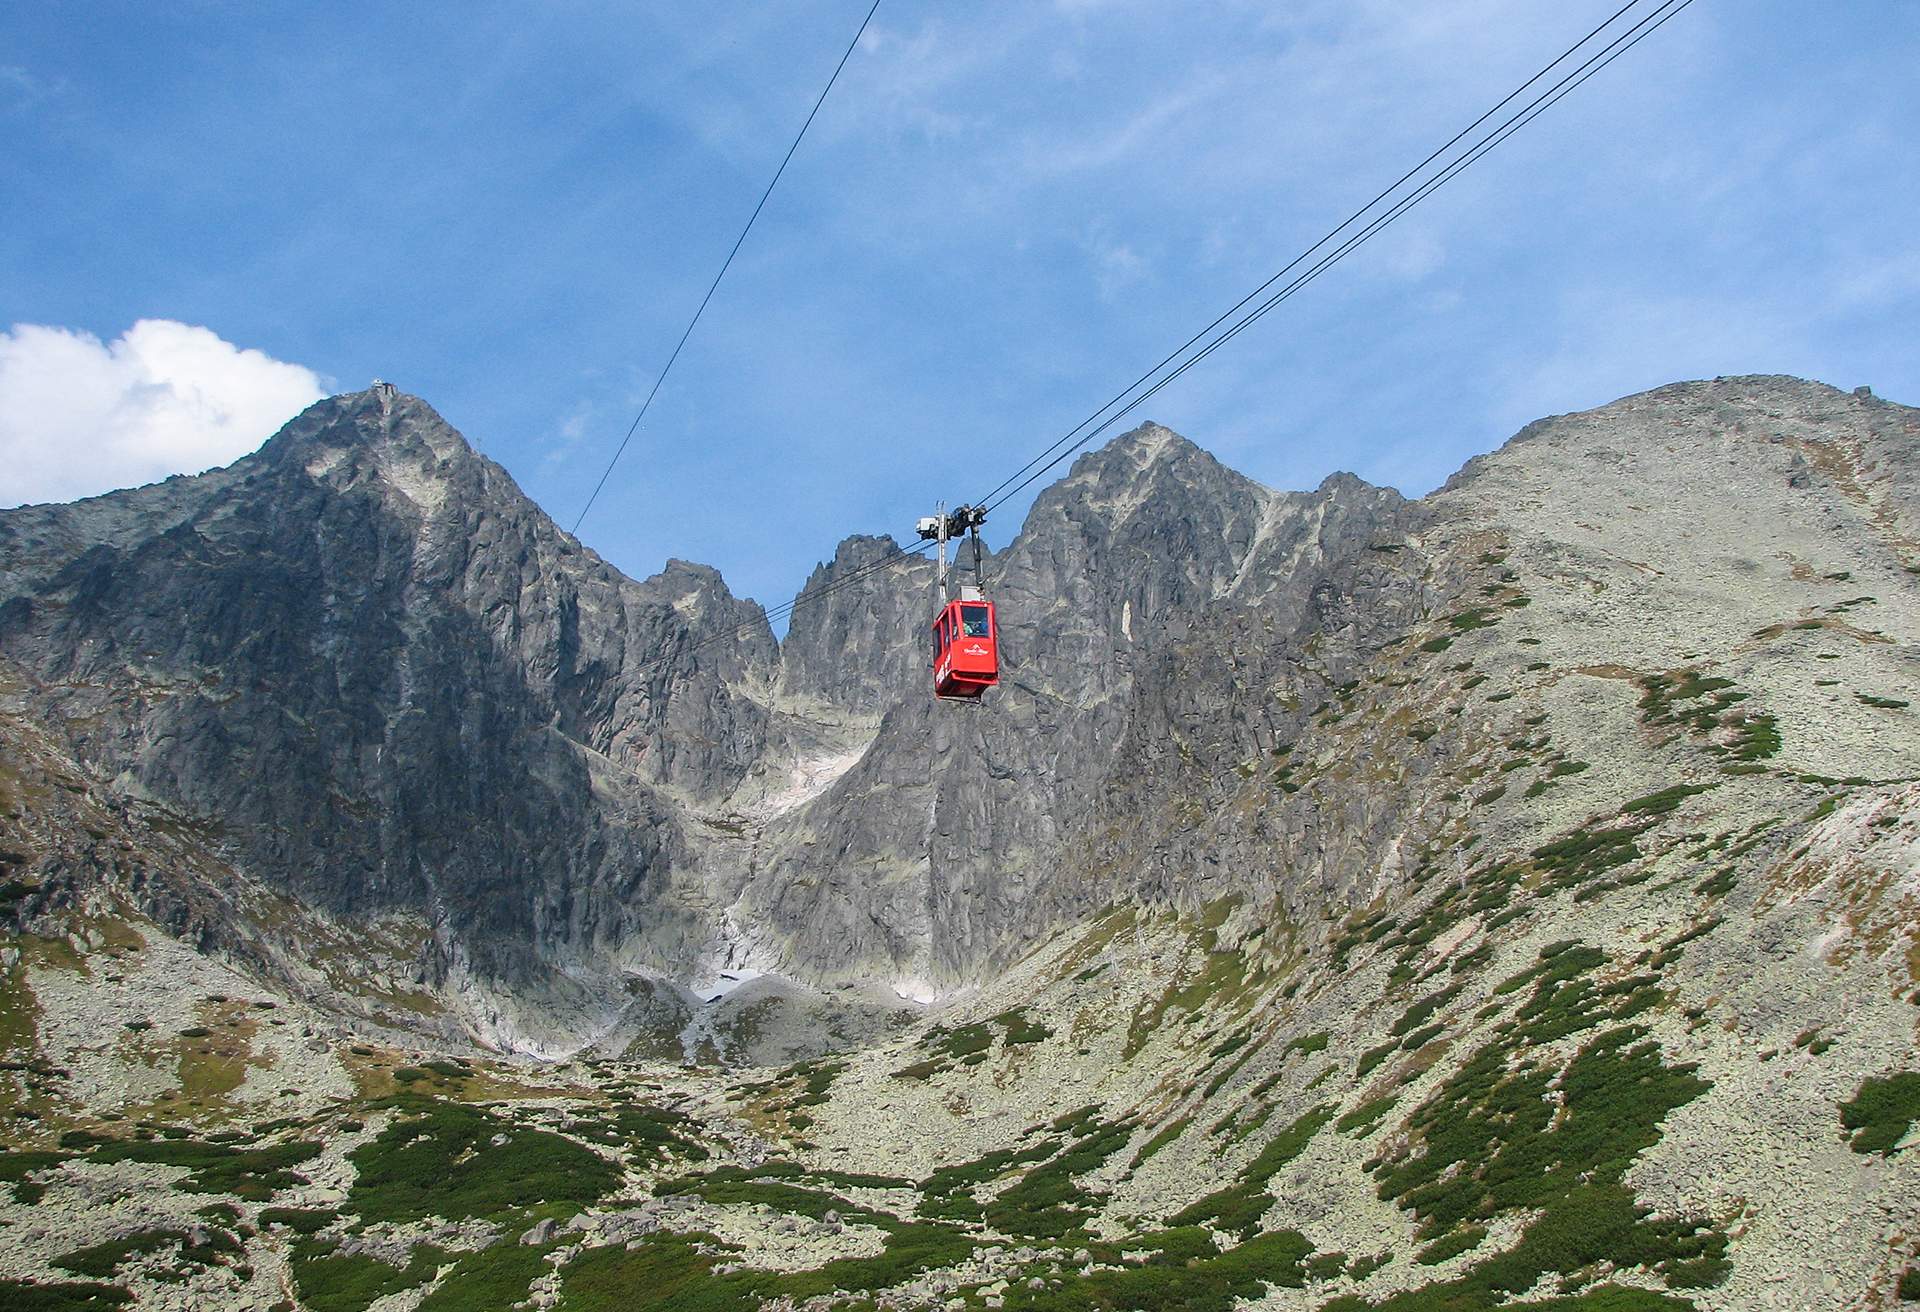 View of mountains with gondola in Zakopane, Poland